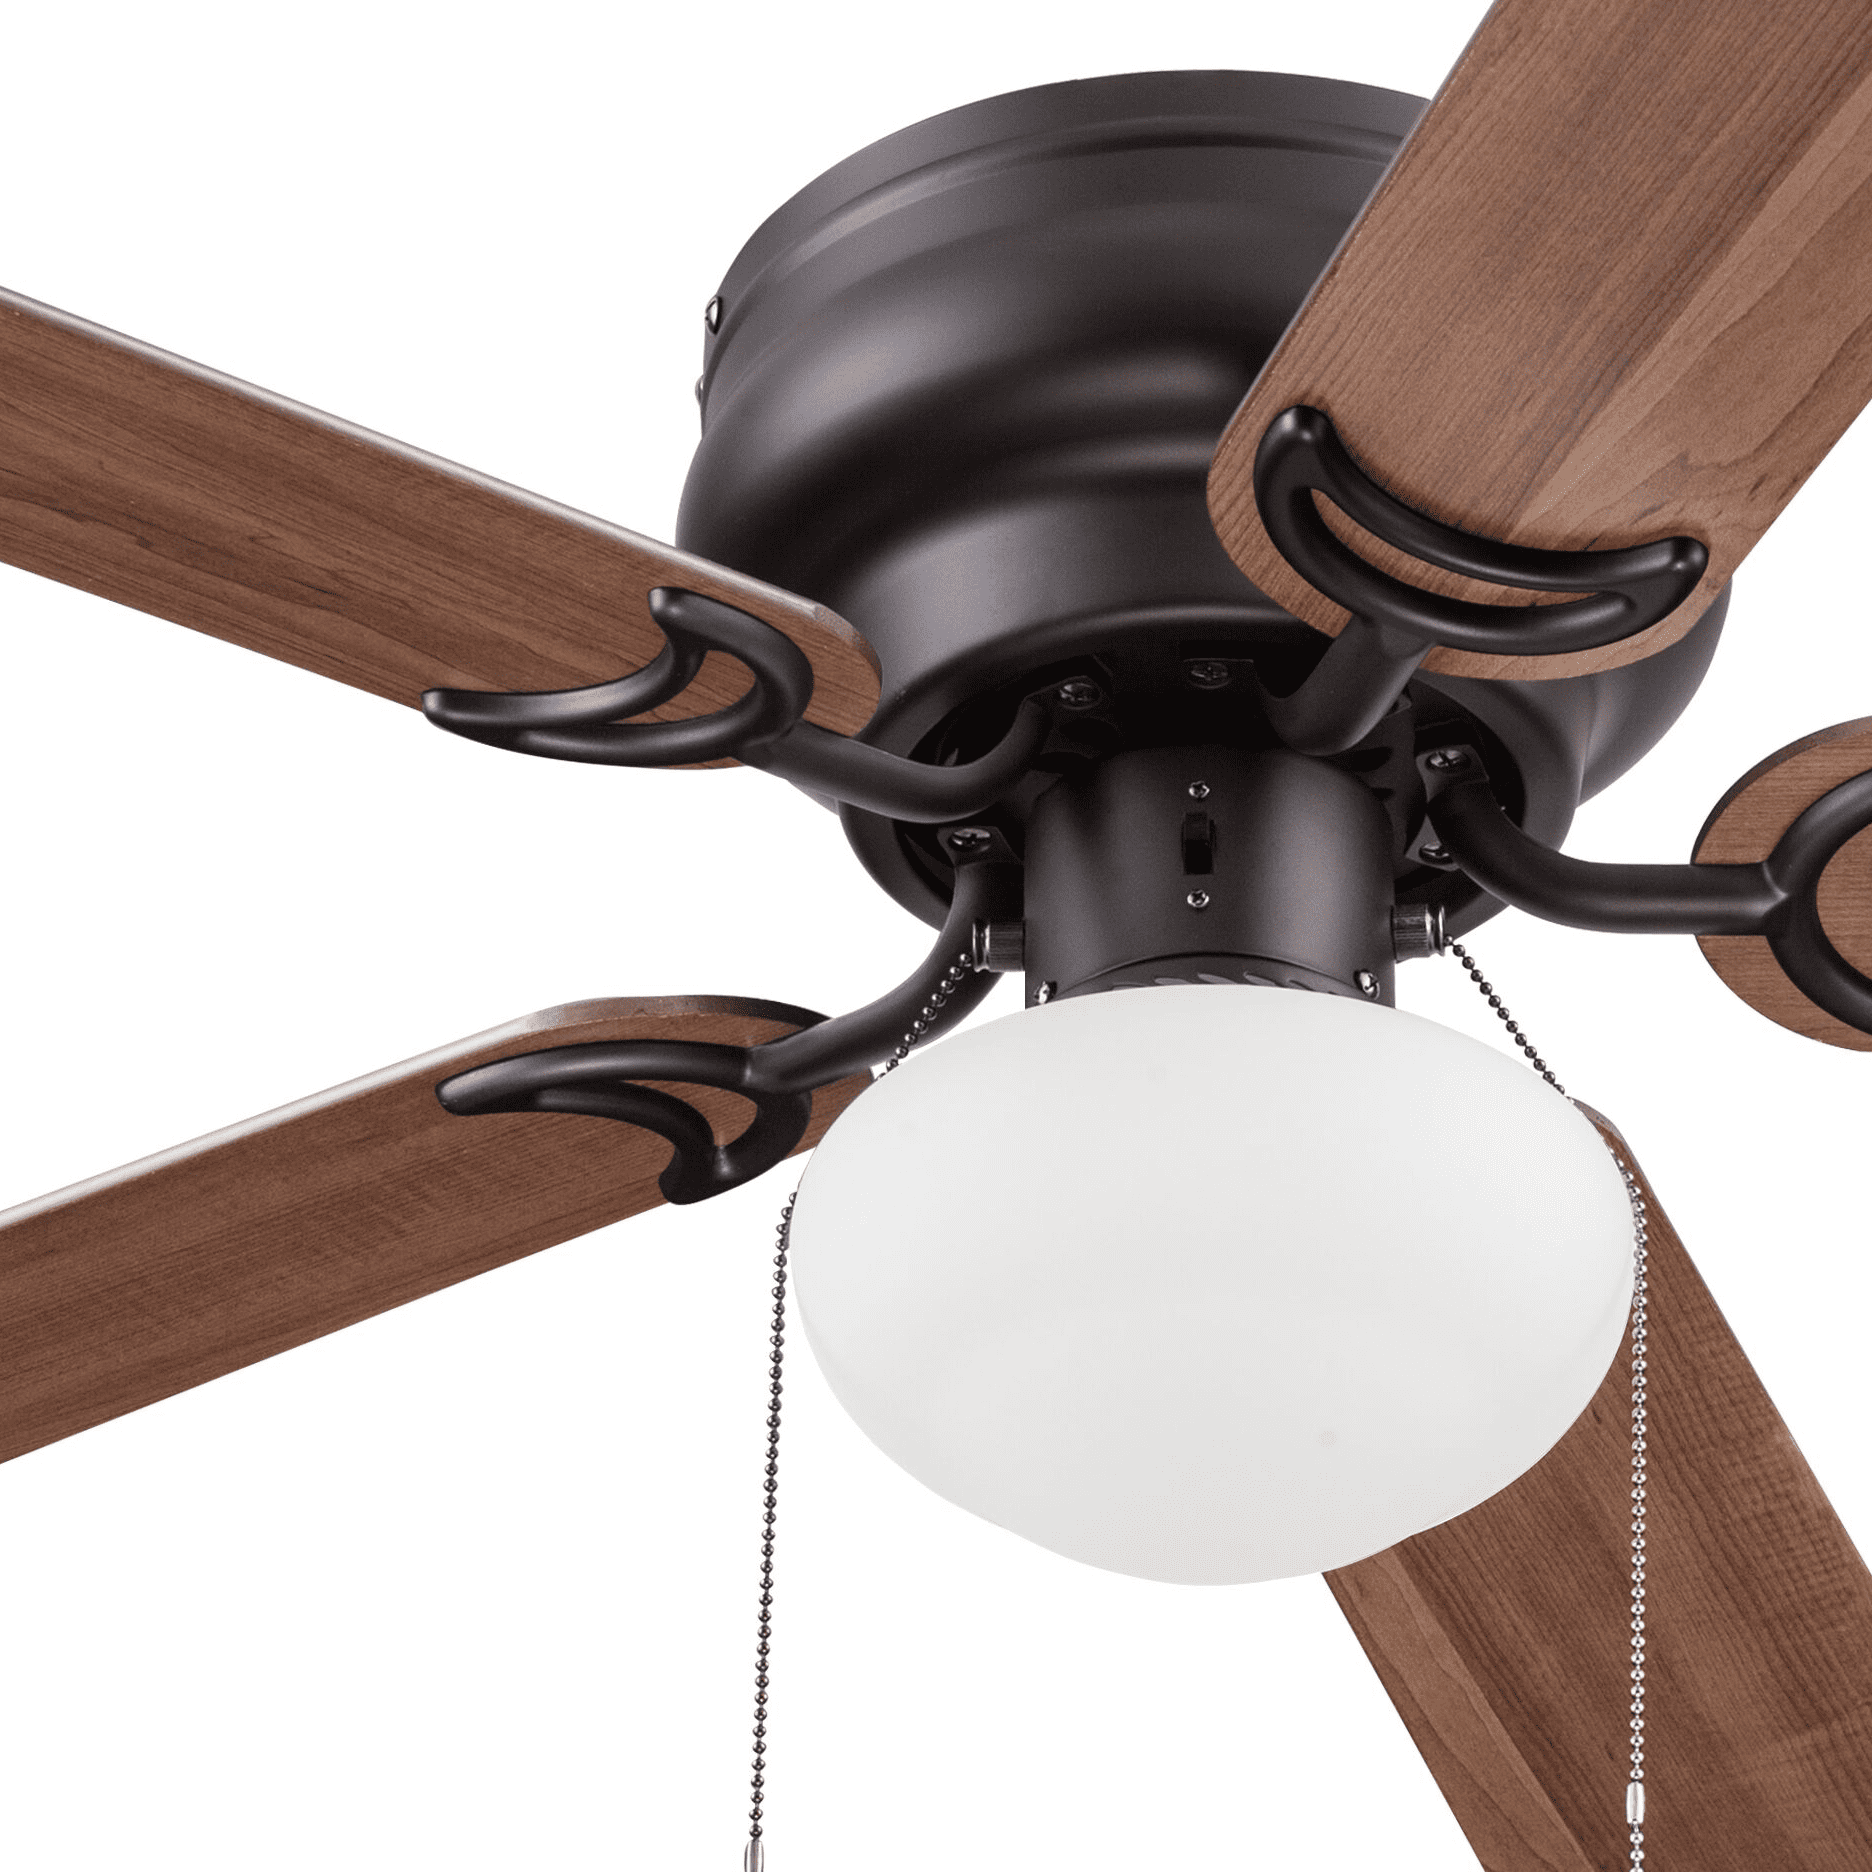 52 inch ceiling fan model 5745 walmart